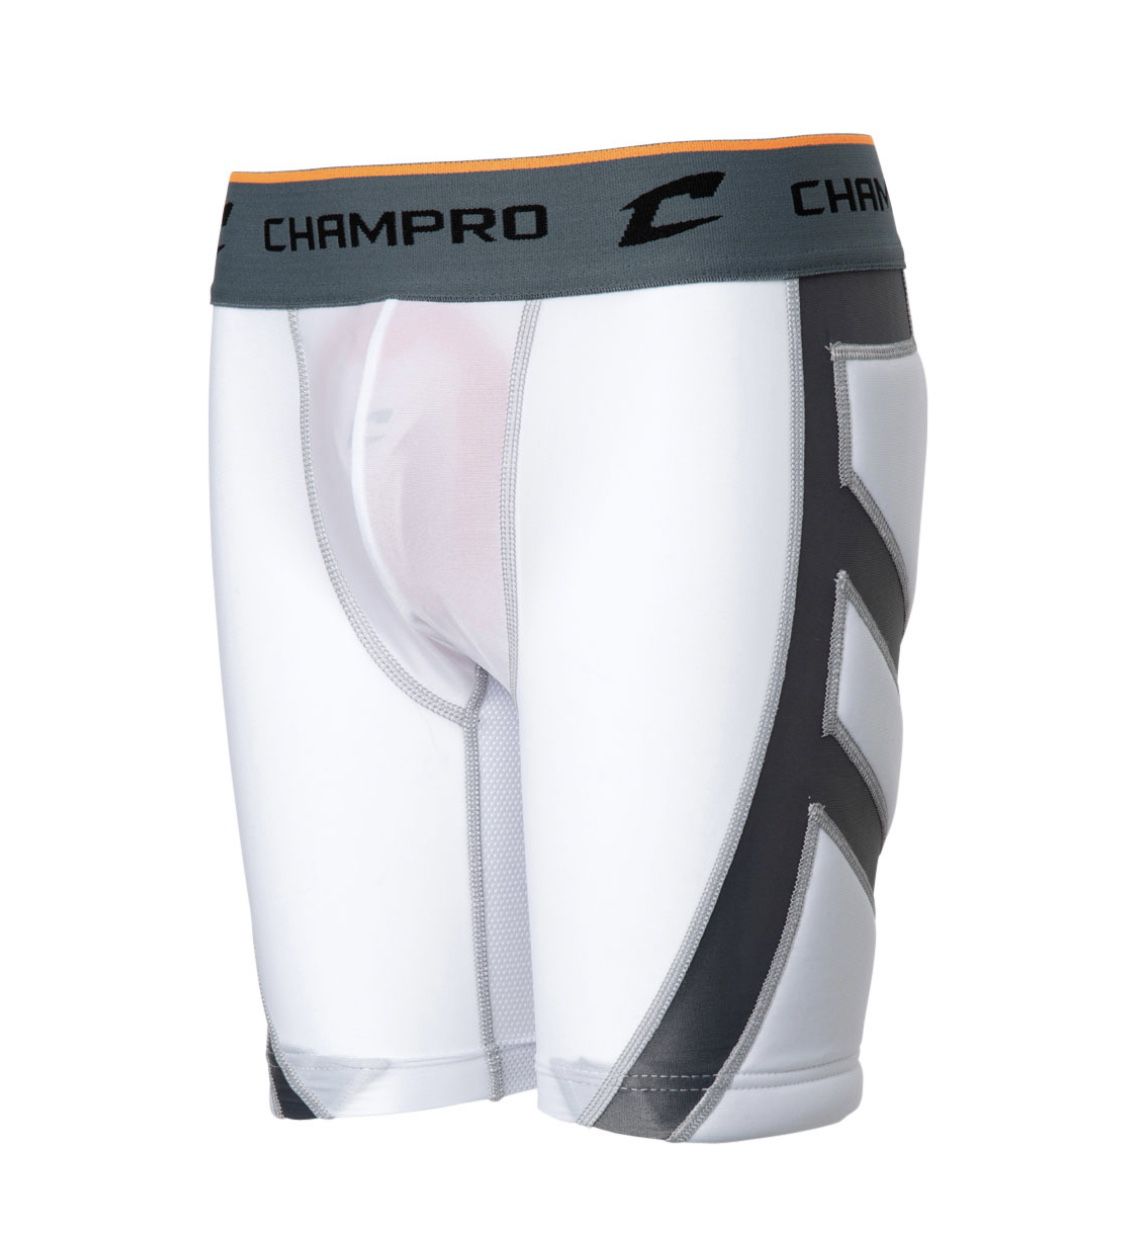 New Champro Sliding Shorts - size Large - $17